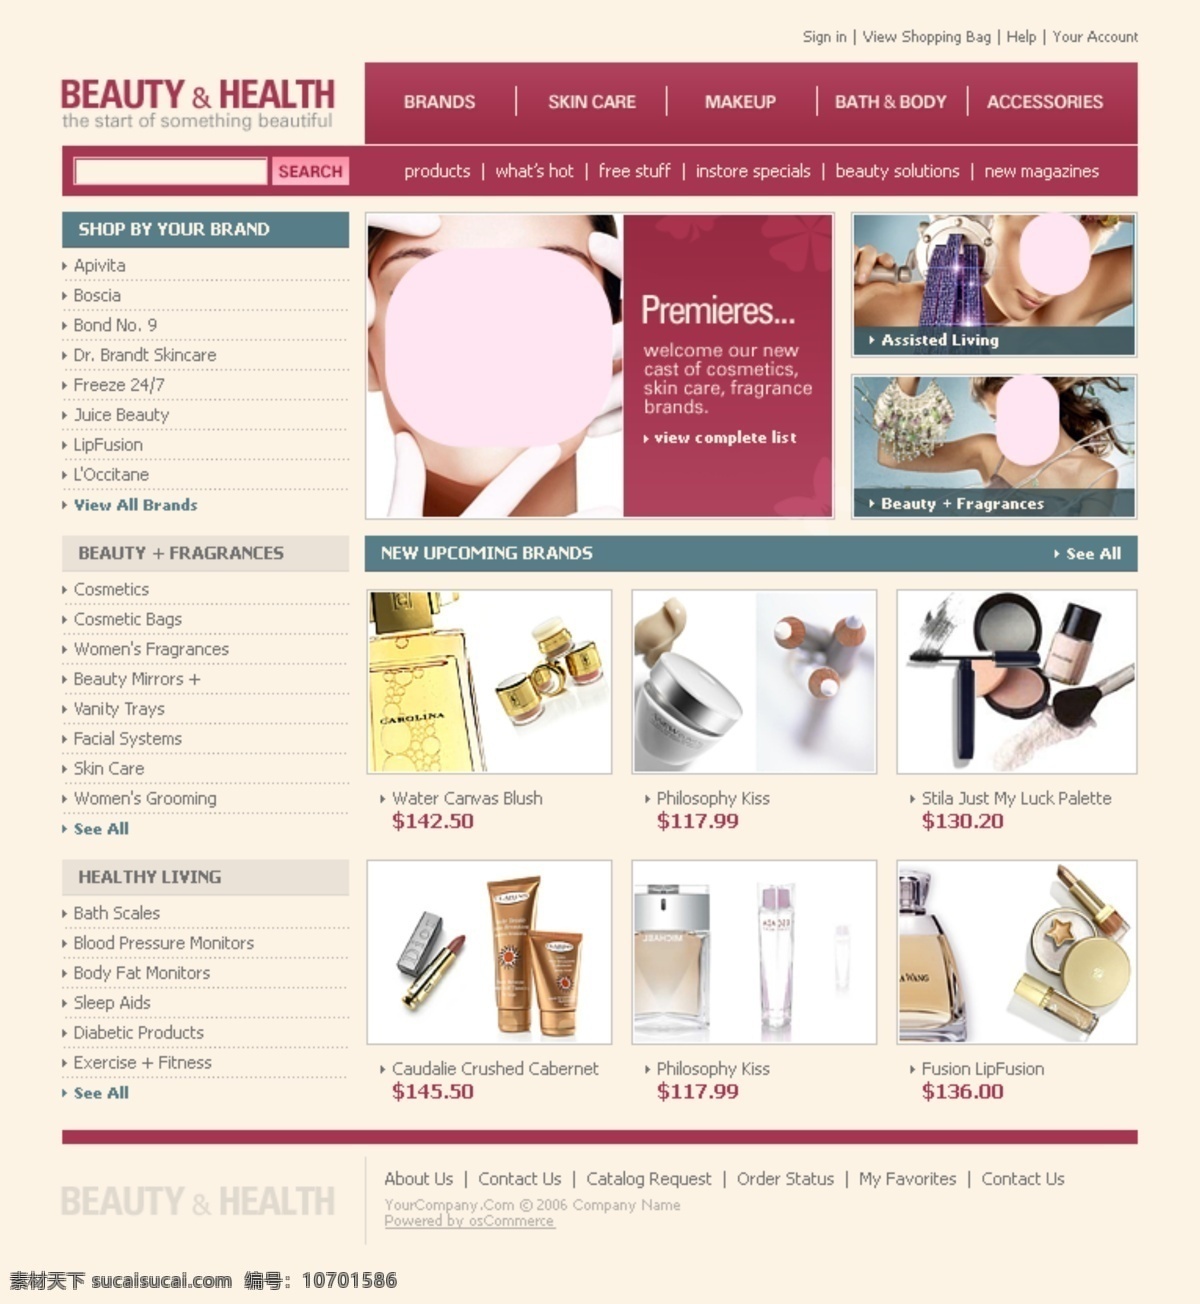 美容化妆 行业 网站 网页 国外网站 设计素材 设计网站模板 网页模板 英文模板 公司类模板 web 界面设计 网页素材 其他网页素材